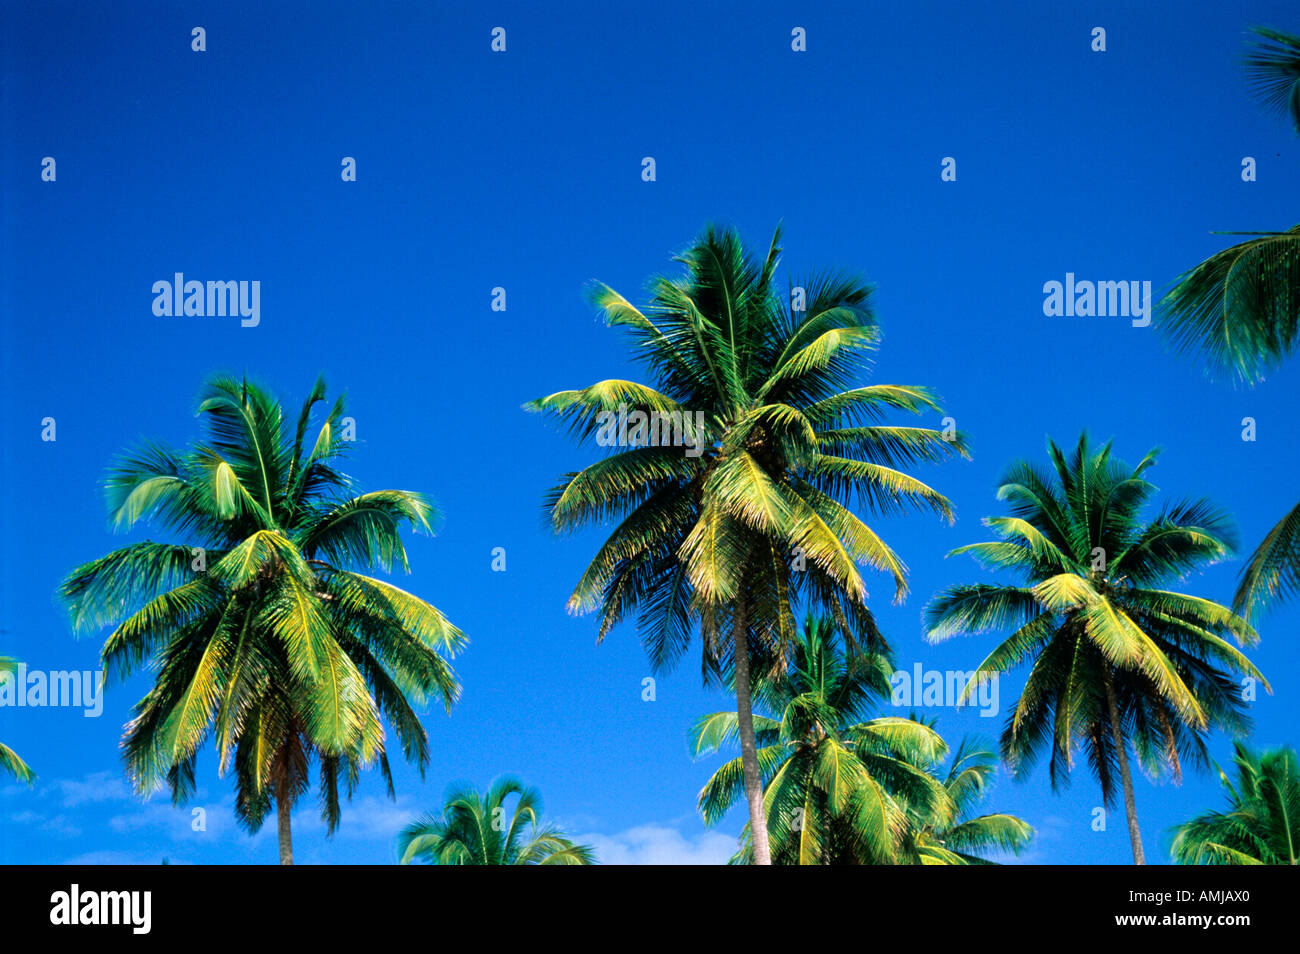 Dominikanische Republik, Samana Halbinsel, Kokospalmen Stock Photo